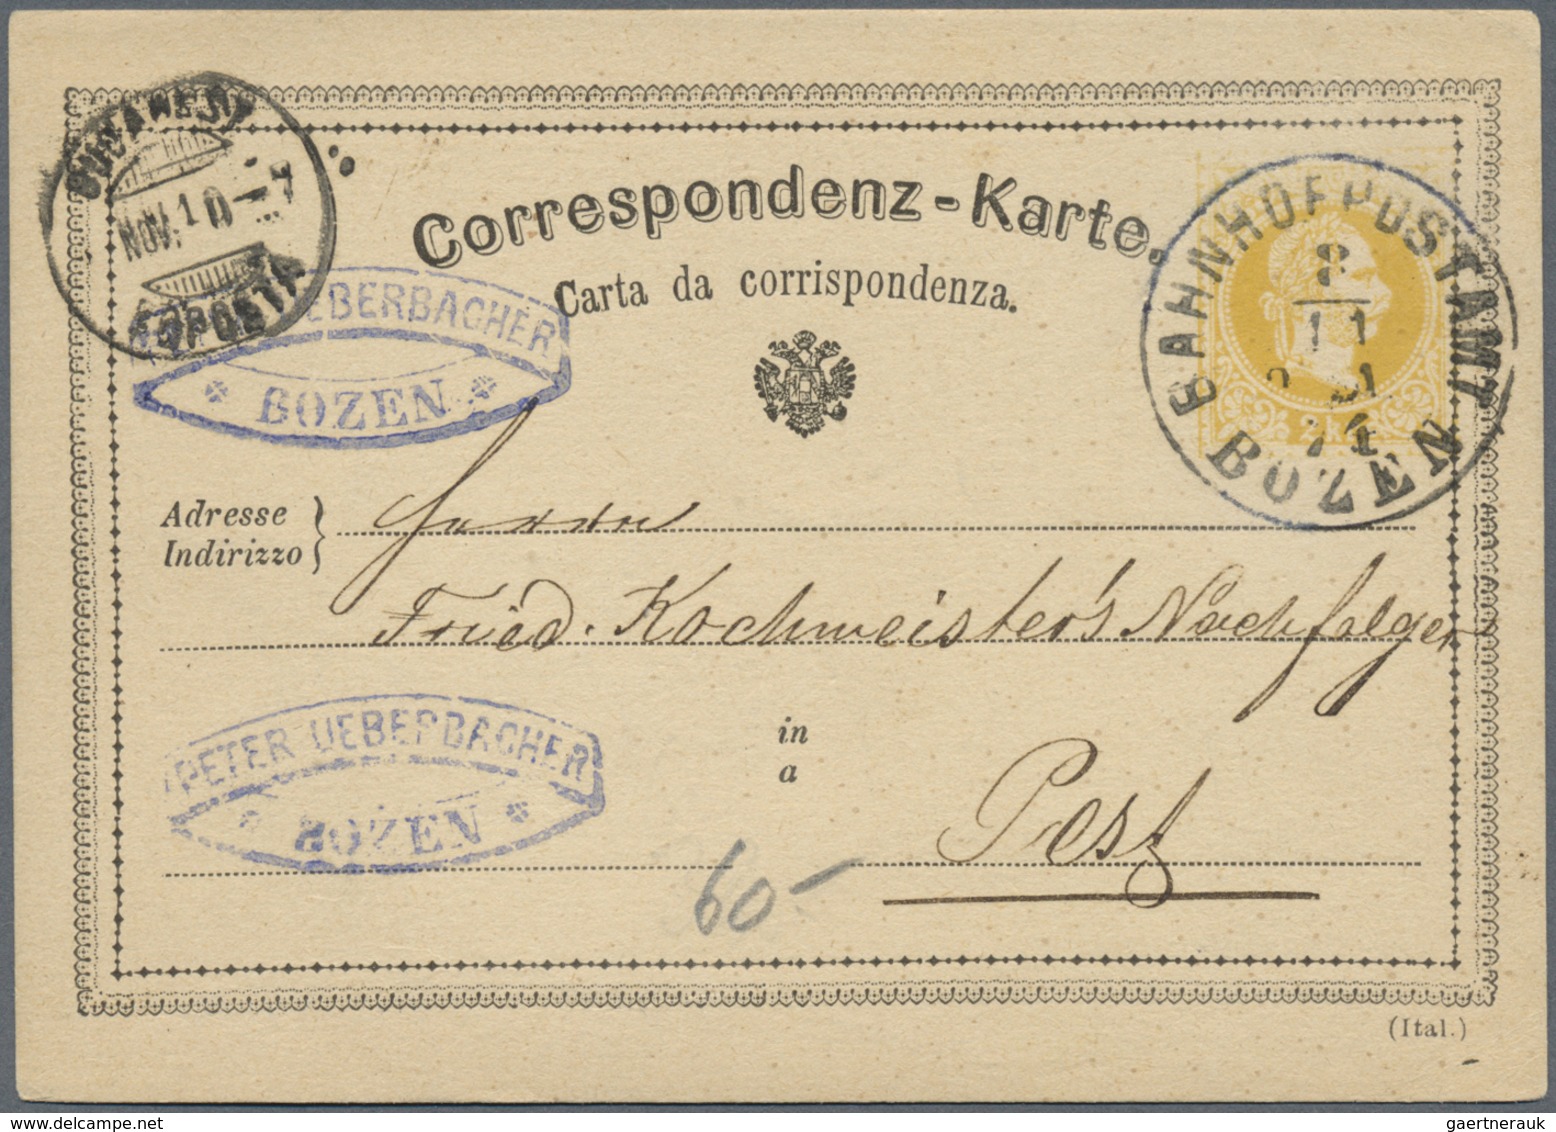 GA/Br Österreich - Stempel: 1869/1886, Stempelsammlung In Außergewöhnlicher Qualität. Ca. 150 Belege, Meis - Machines à Affranchir (EMA)